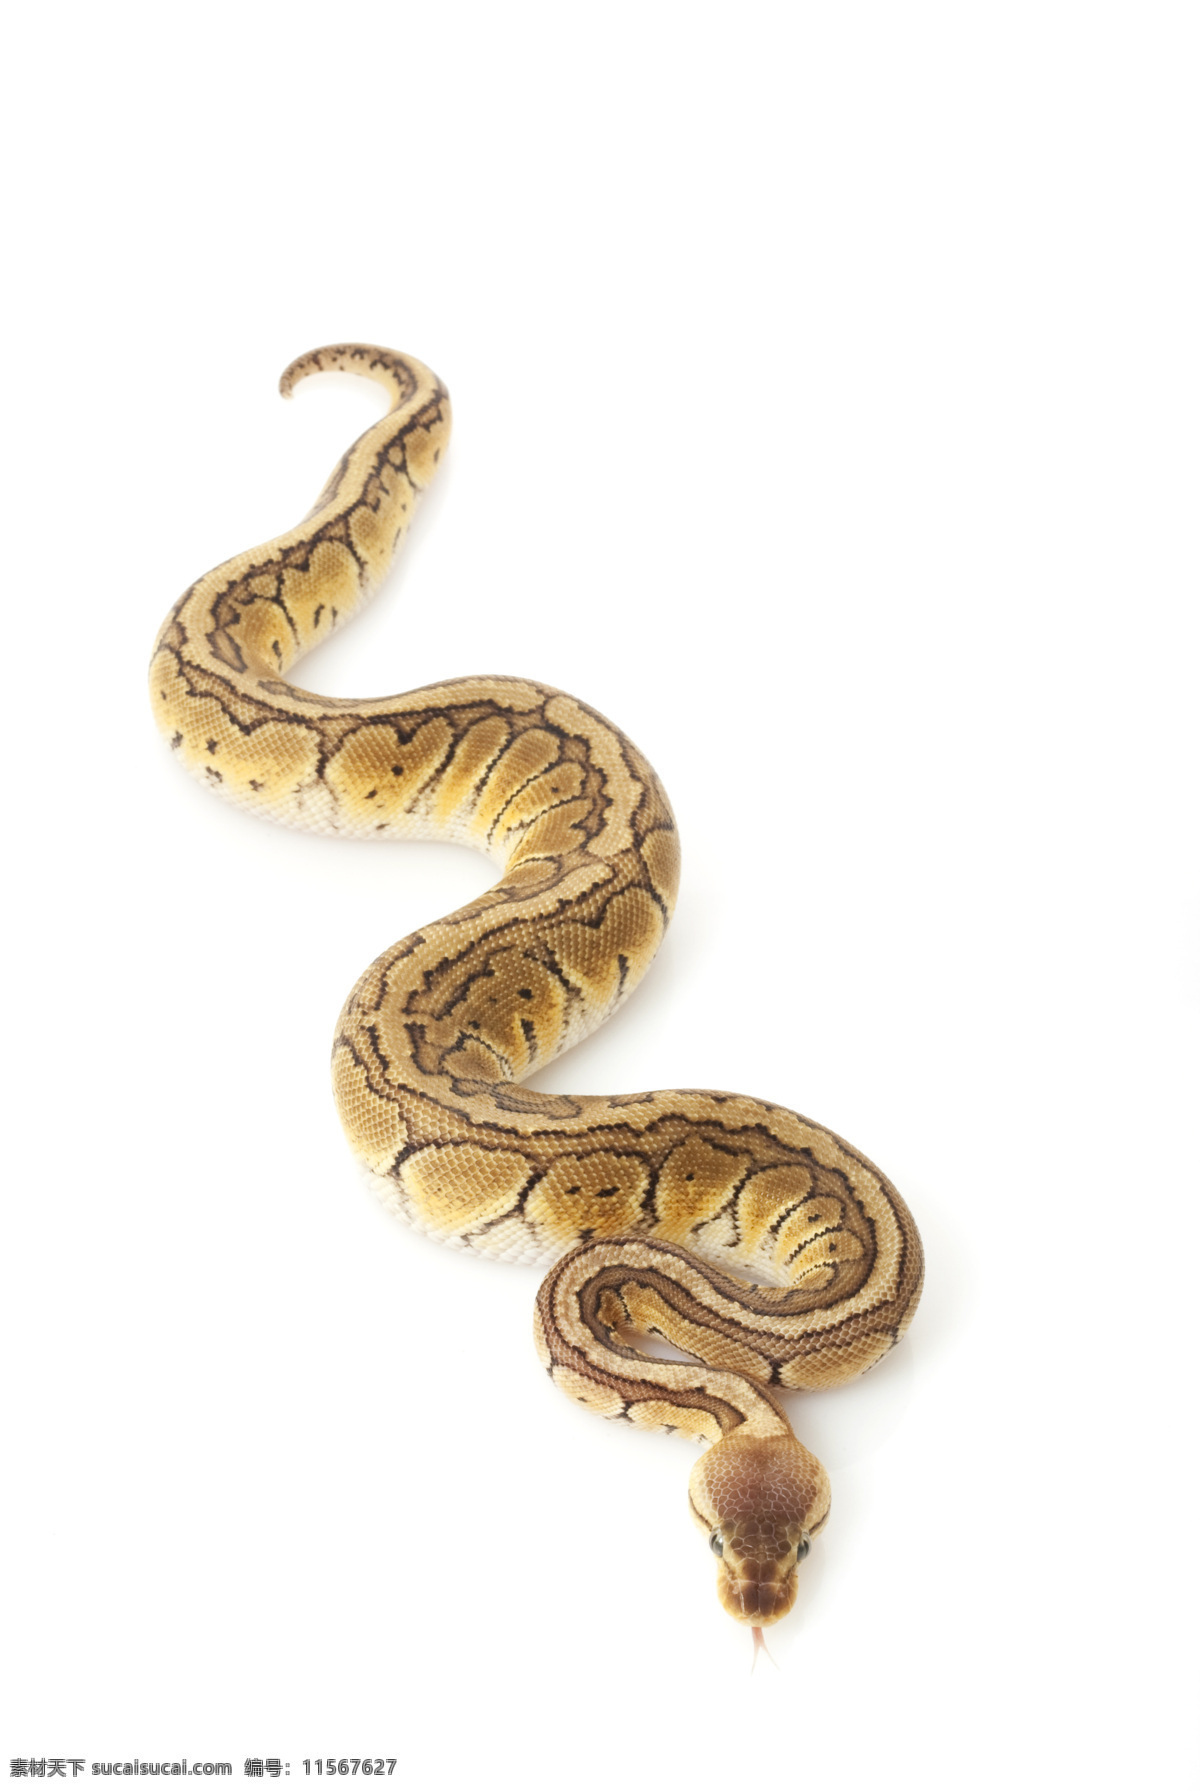 蛇类 花蛇 爬行类 长蛇 蟒蛇 生物世界 野生 动物 野生动物